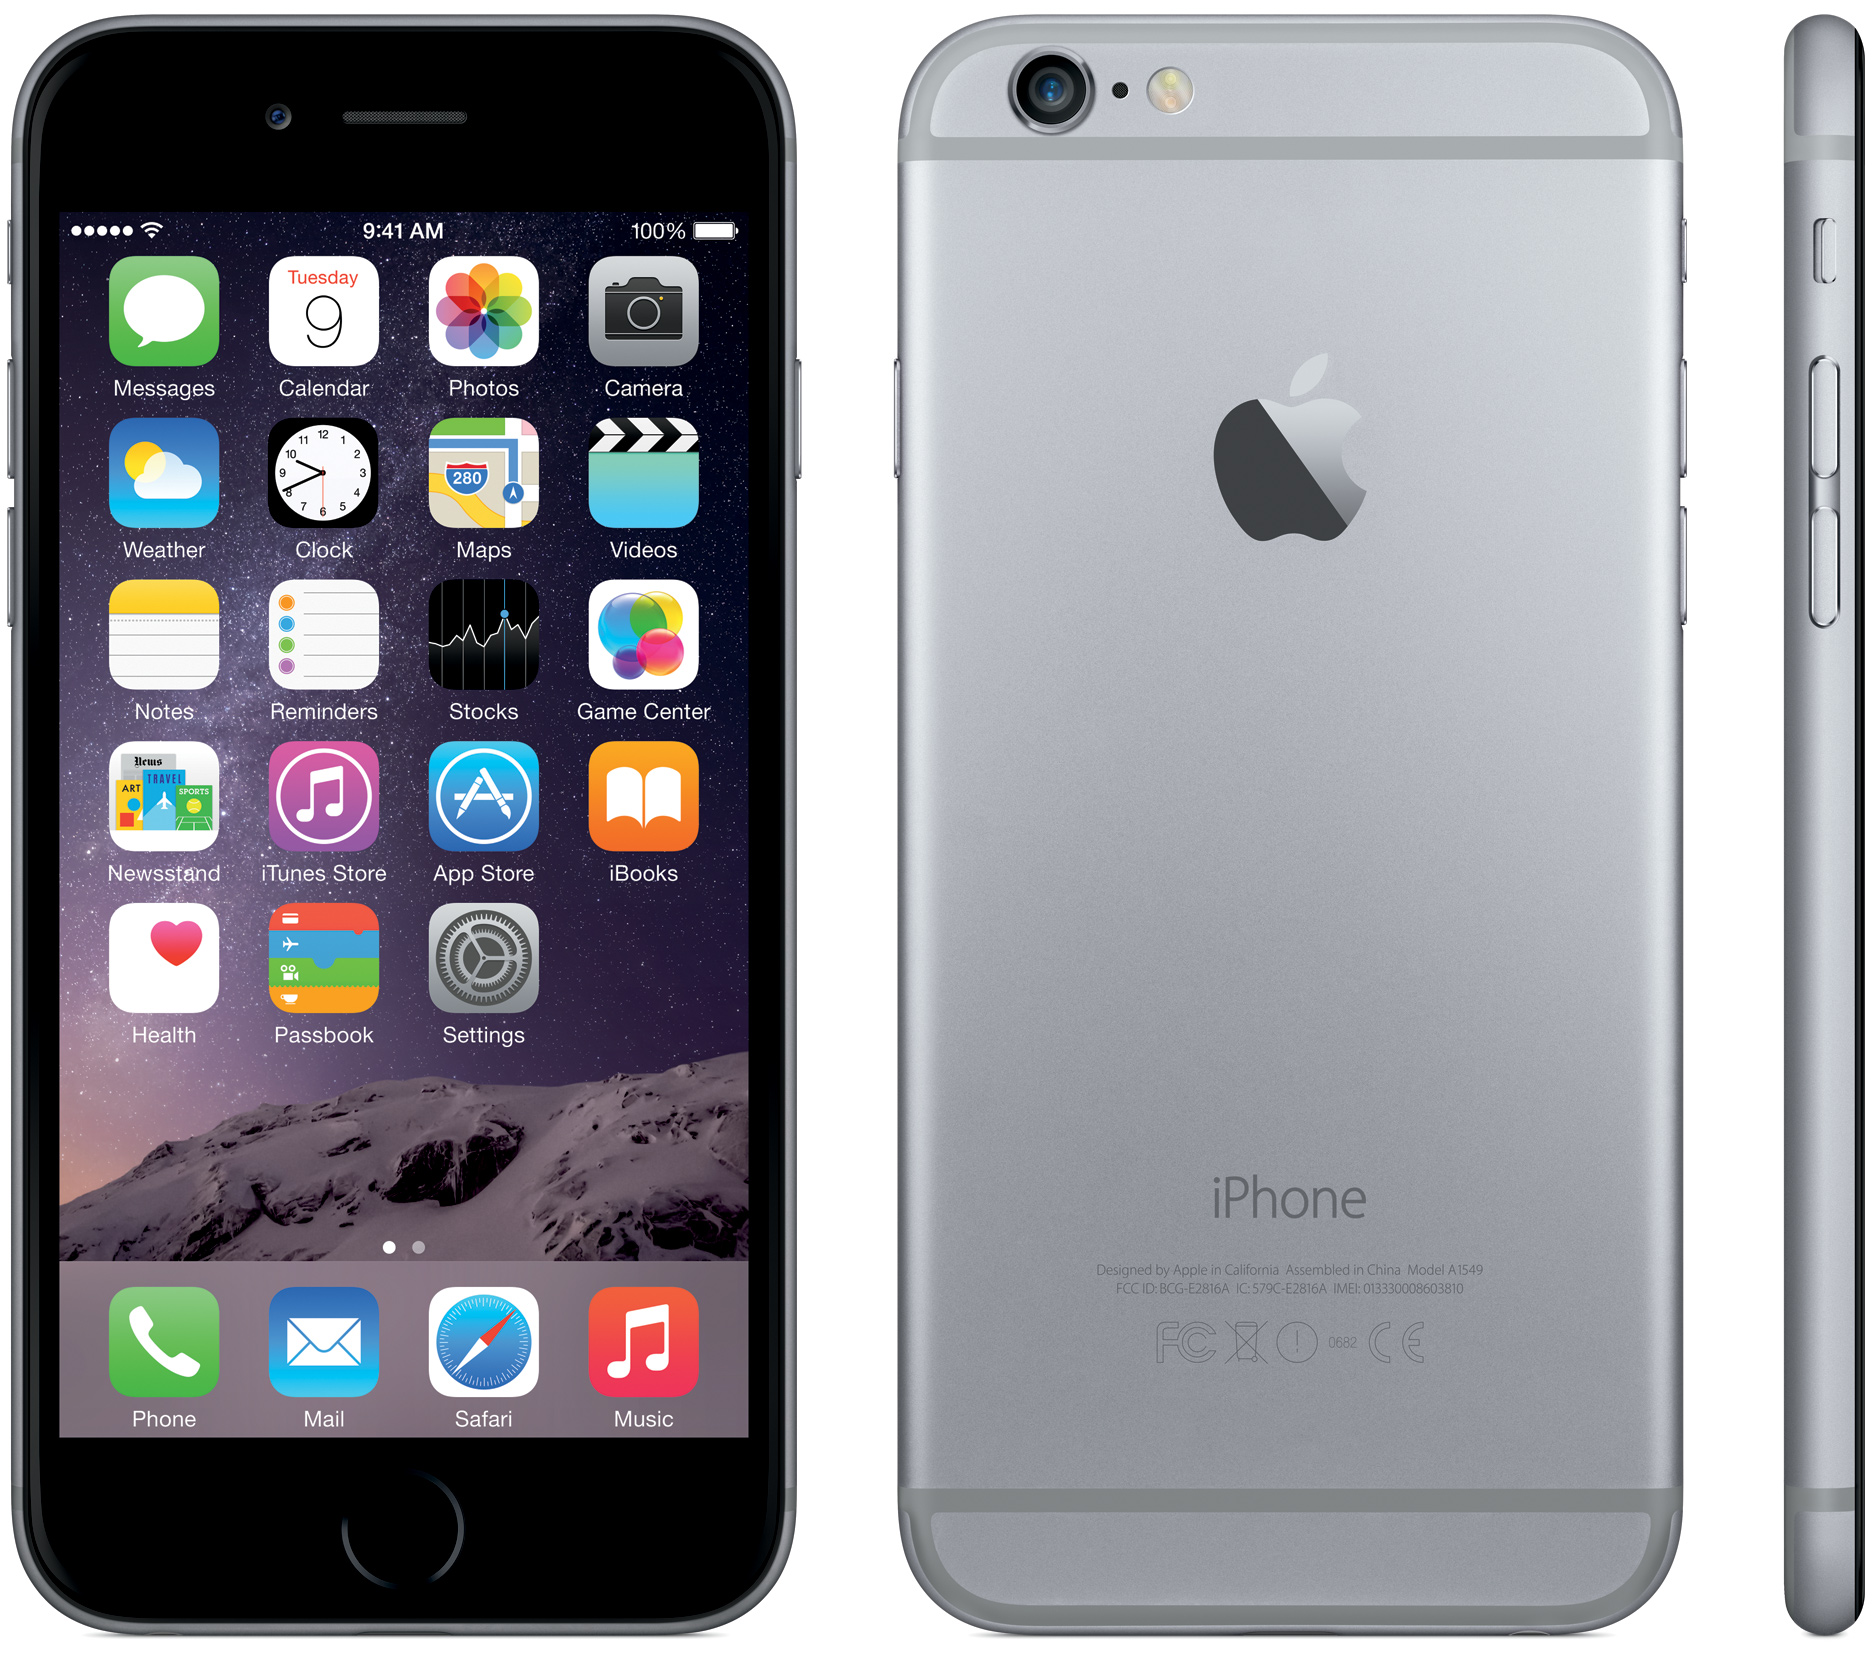 Apple introduces iPhone 6, iPhone 6 Plus smartphones | KitGuru